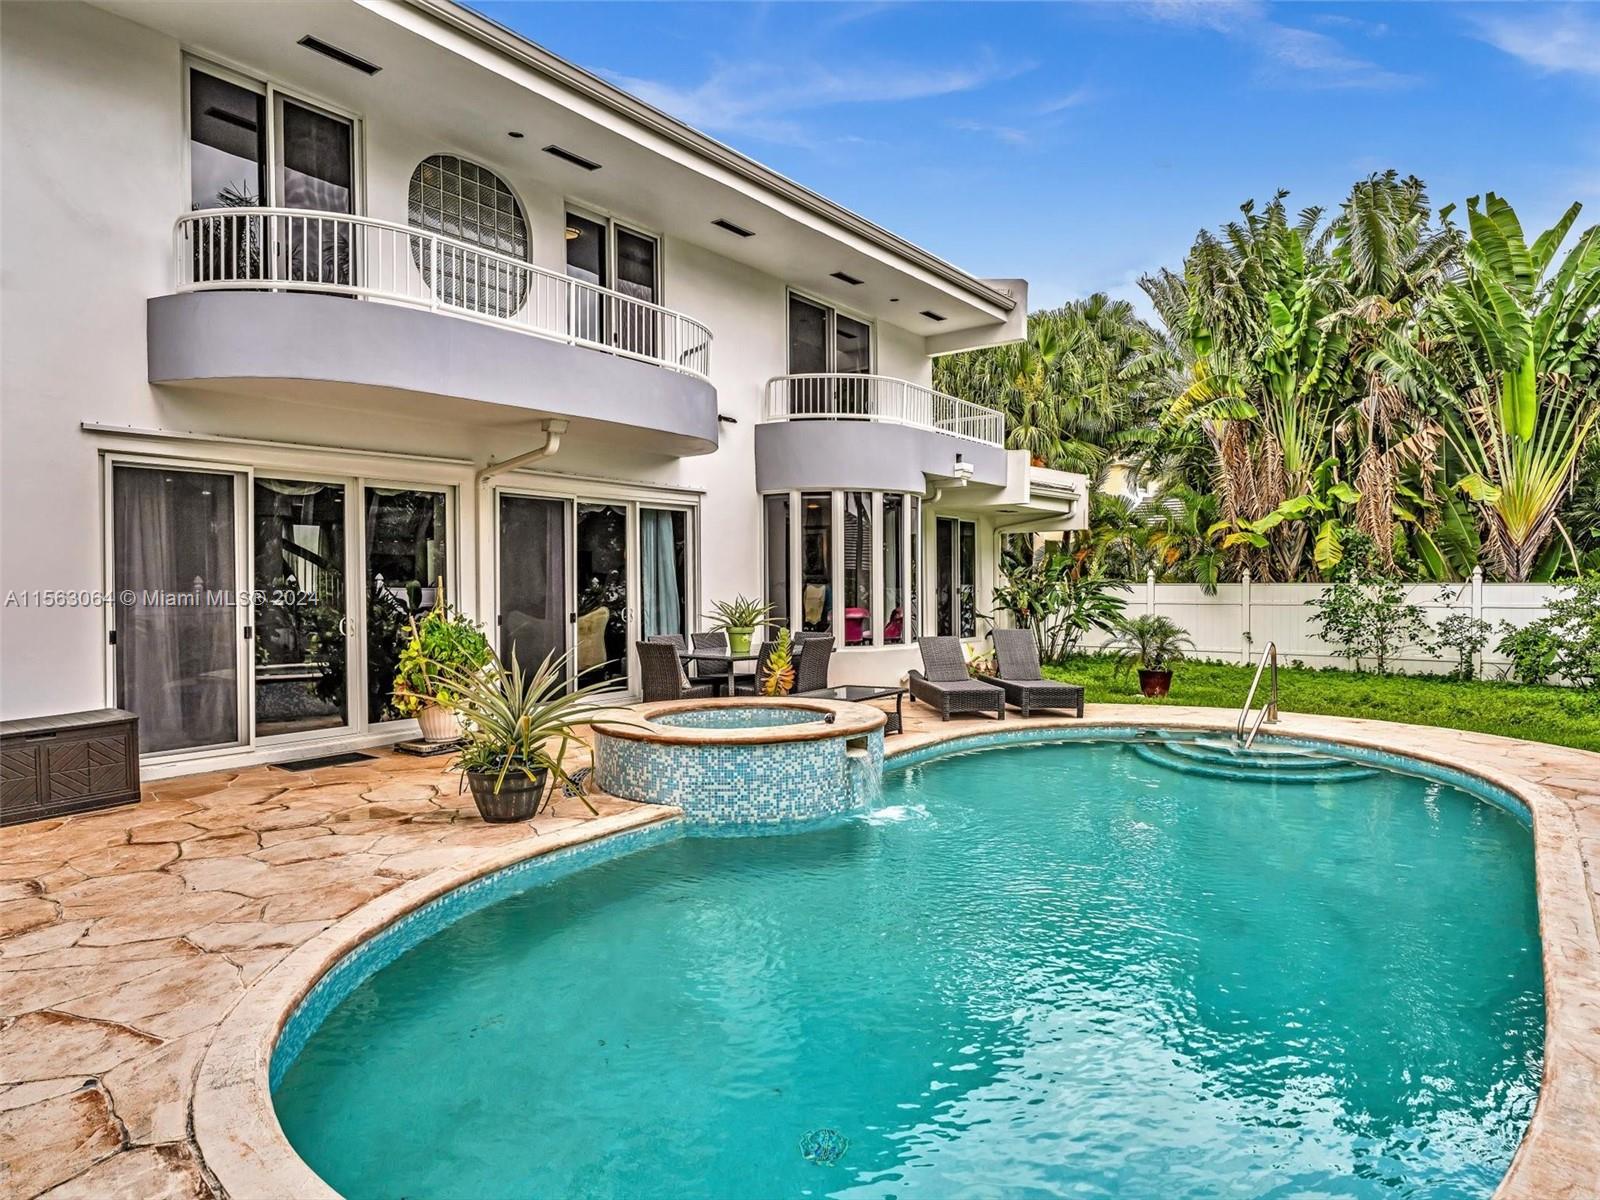 Property for Sale at 616 Ocean Blvd, Golden Beach, Miami-Dade County, Florida - Bedrooms: 4 
Bathrooms: 4  - $4,330,000